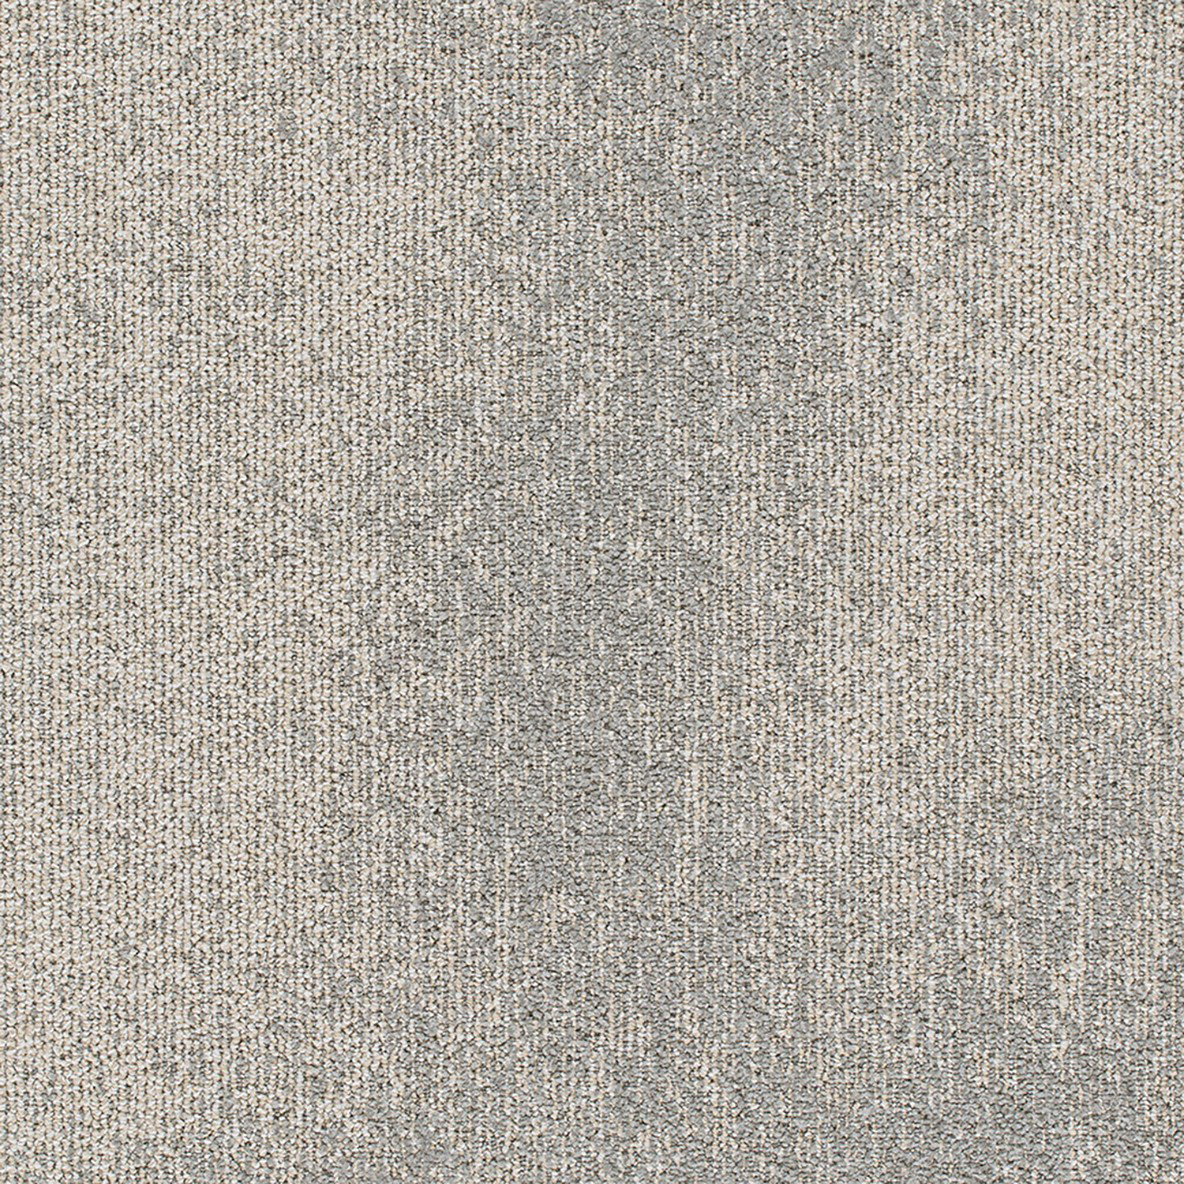 Understatement Commercial Carpet Tile .31 Inch x 50x50 cm per Tile Oyster color close up